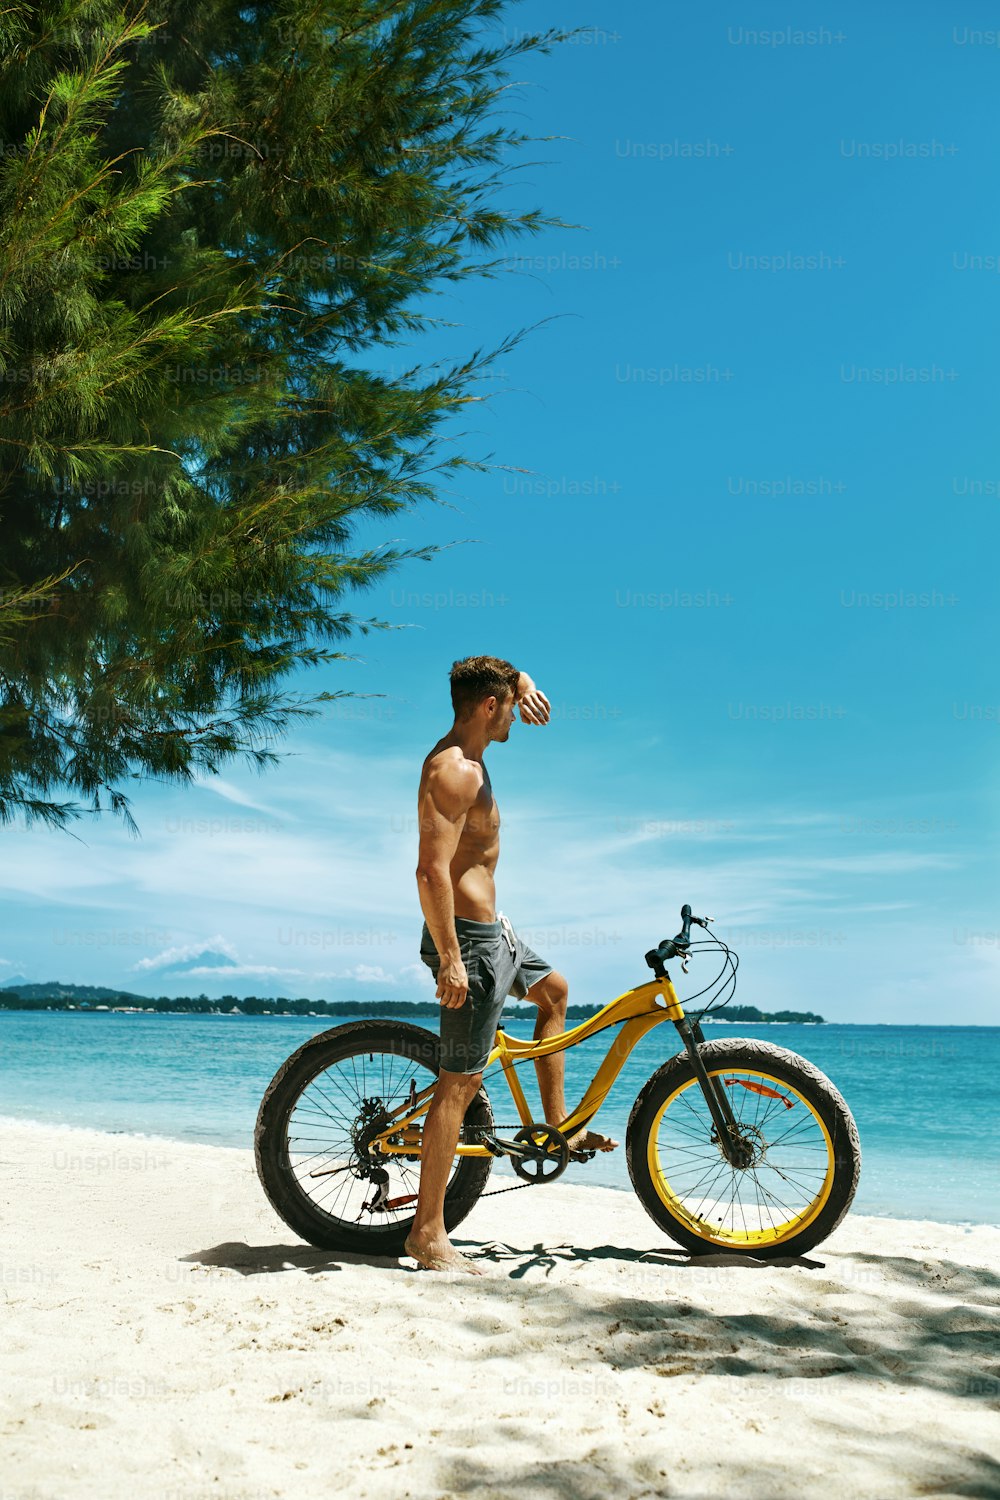 여름 해변 스포츠. 근육질의 몸매를 가진 운동선수가 열대 해변에서 노란 모래 자전거를 타고 있다. 휴가 여행 휴가에 자전거를 탄 피트니스 남성 모델. 스포츠 활동, 활동적인 라이프스타일 개념